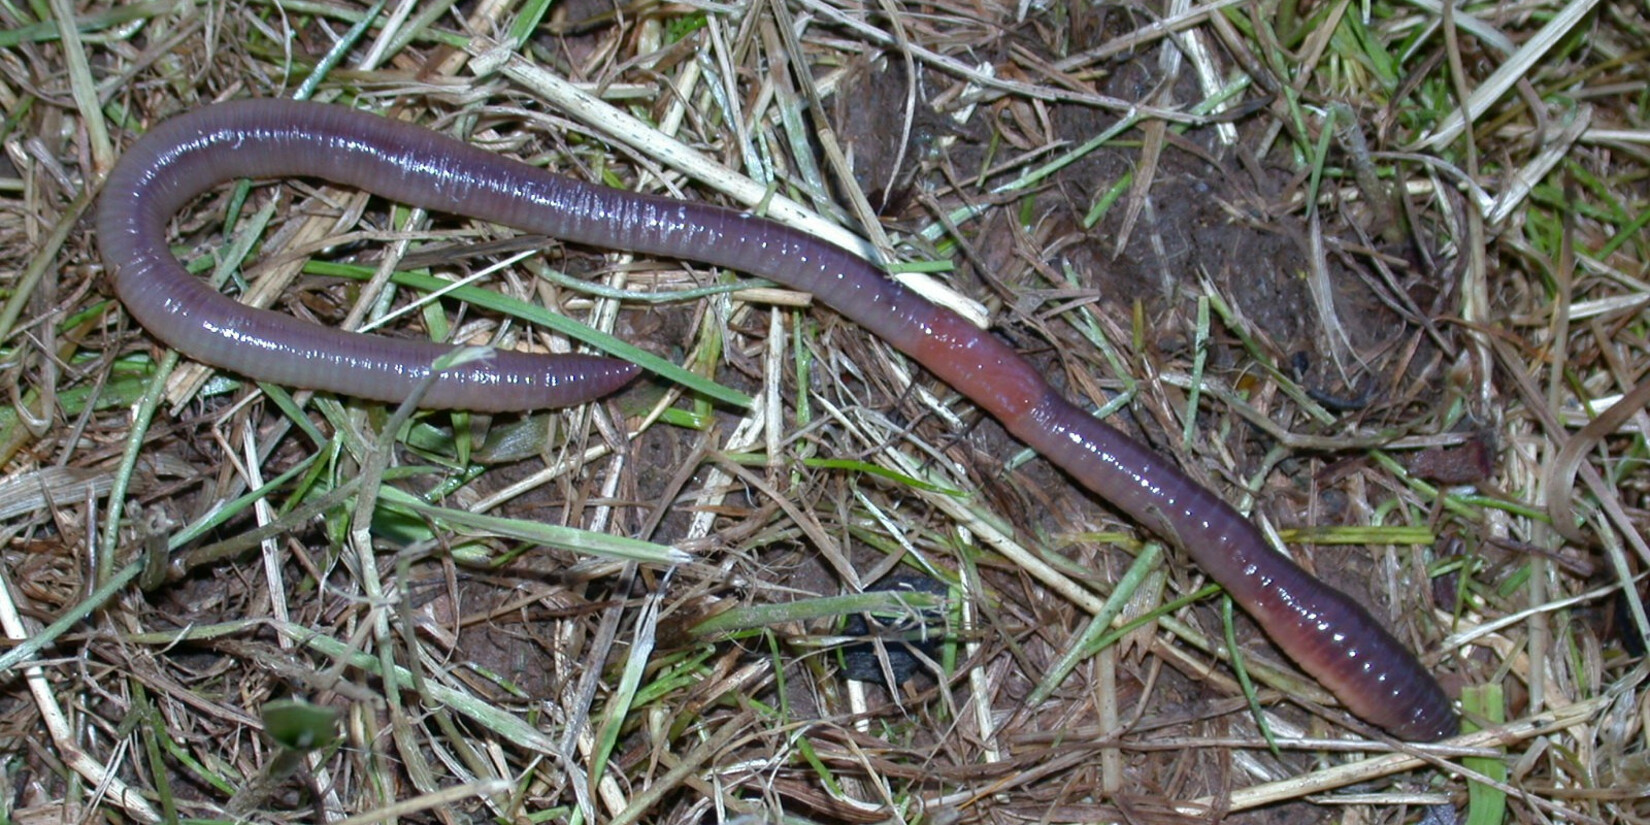 An Earthworm (Aporrectodea longa) on a meadow